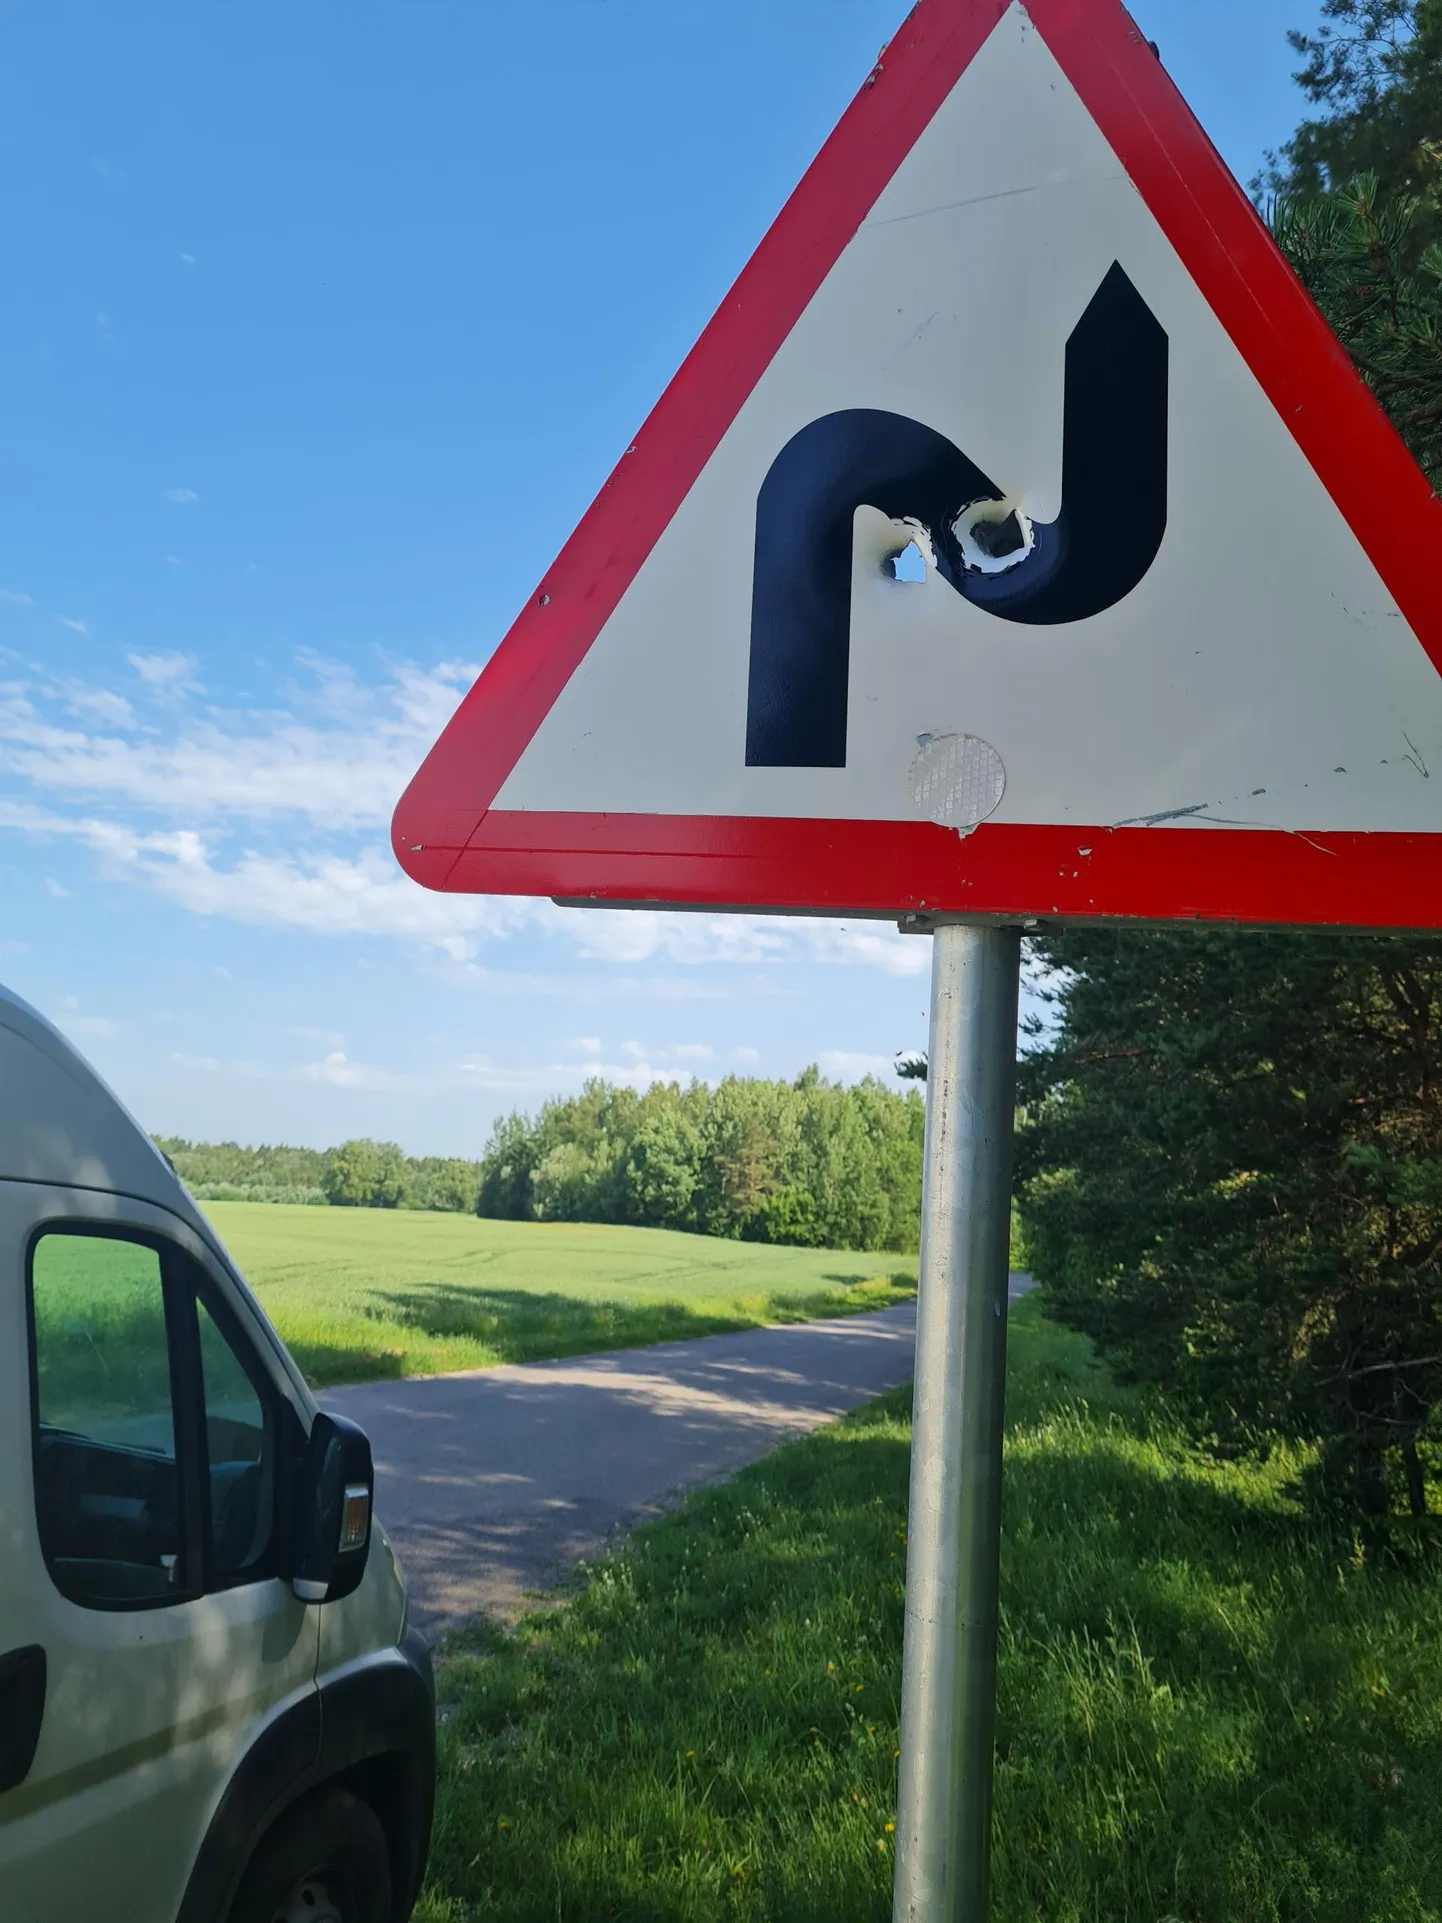 Kuuliaukudega liiklusmärk Karitsa ja Koeravere vahelisel teelõigul.